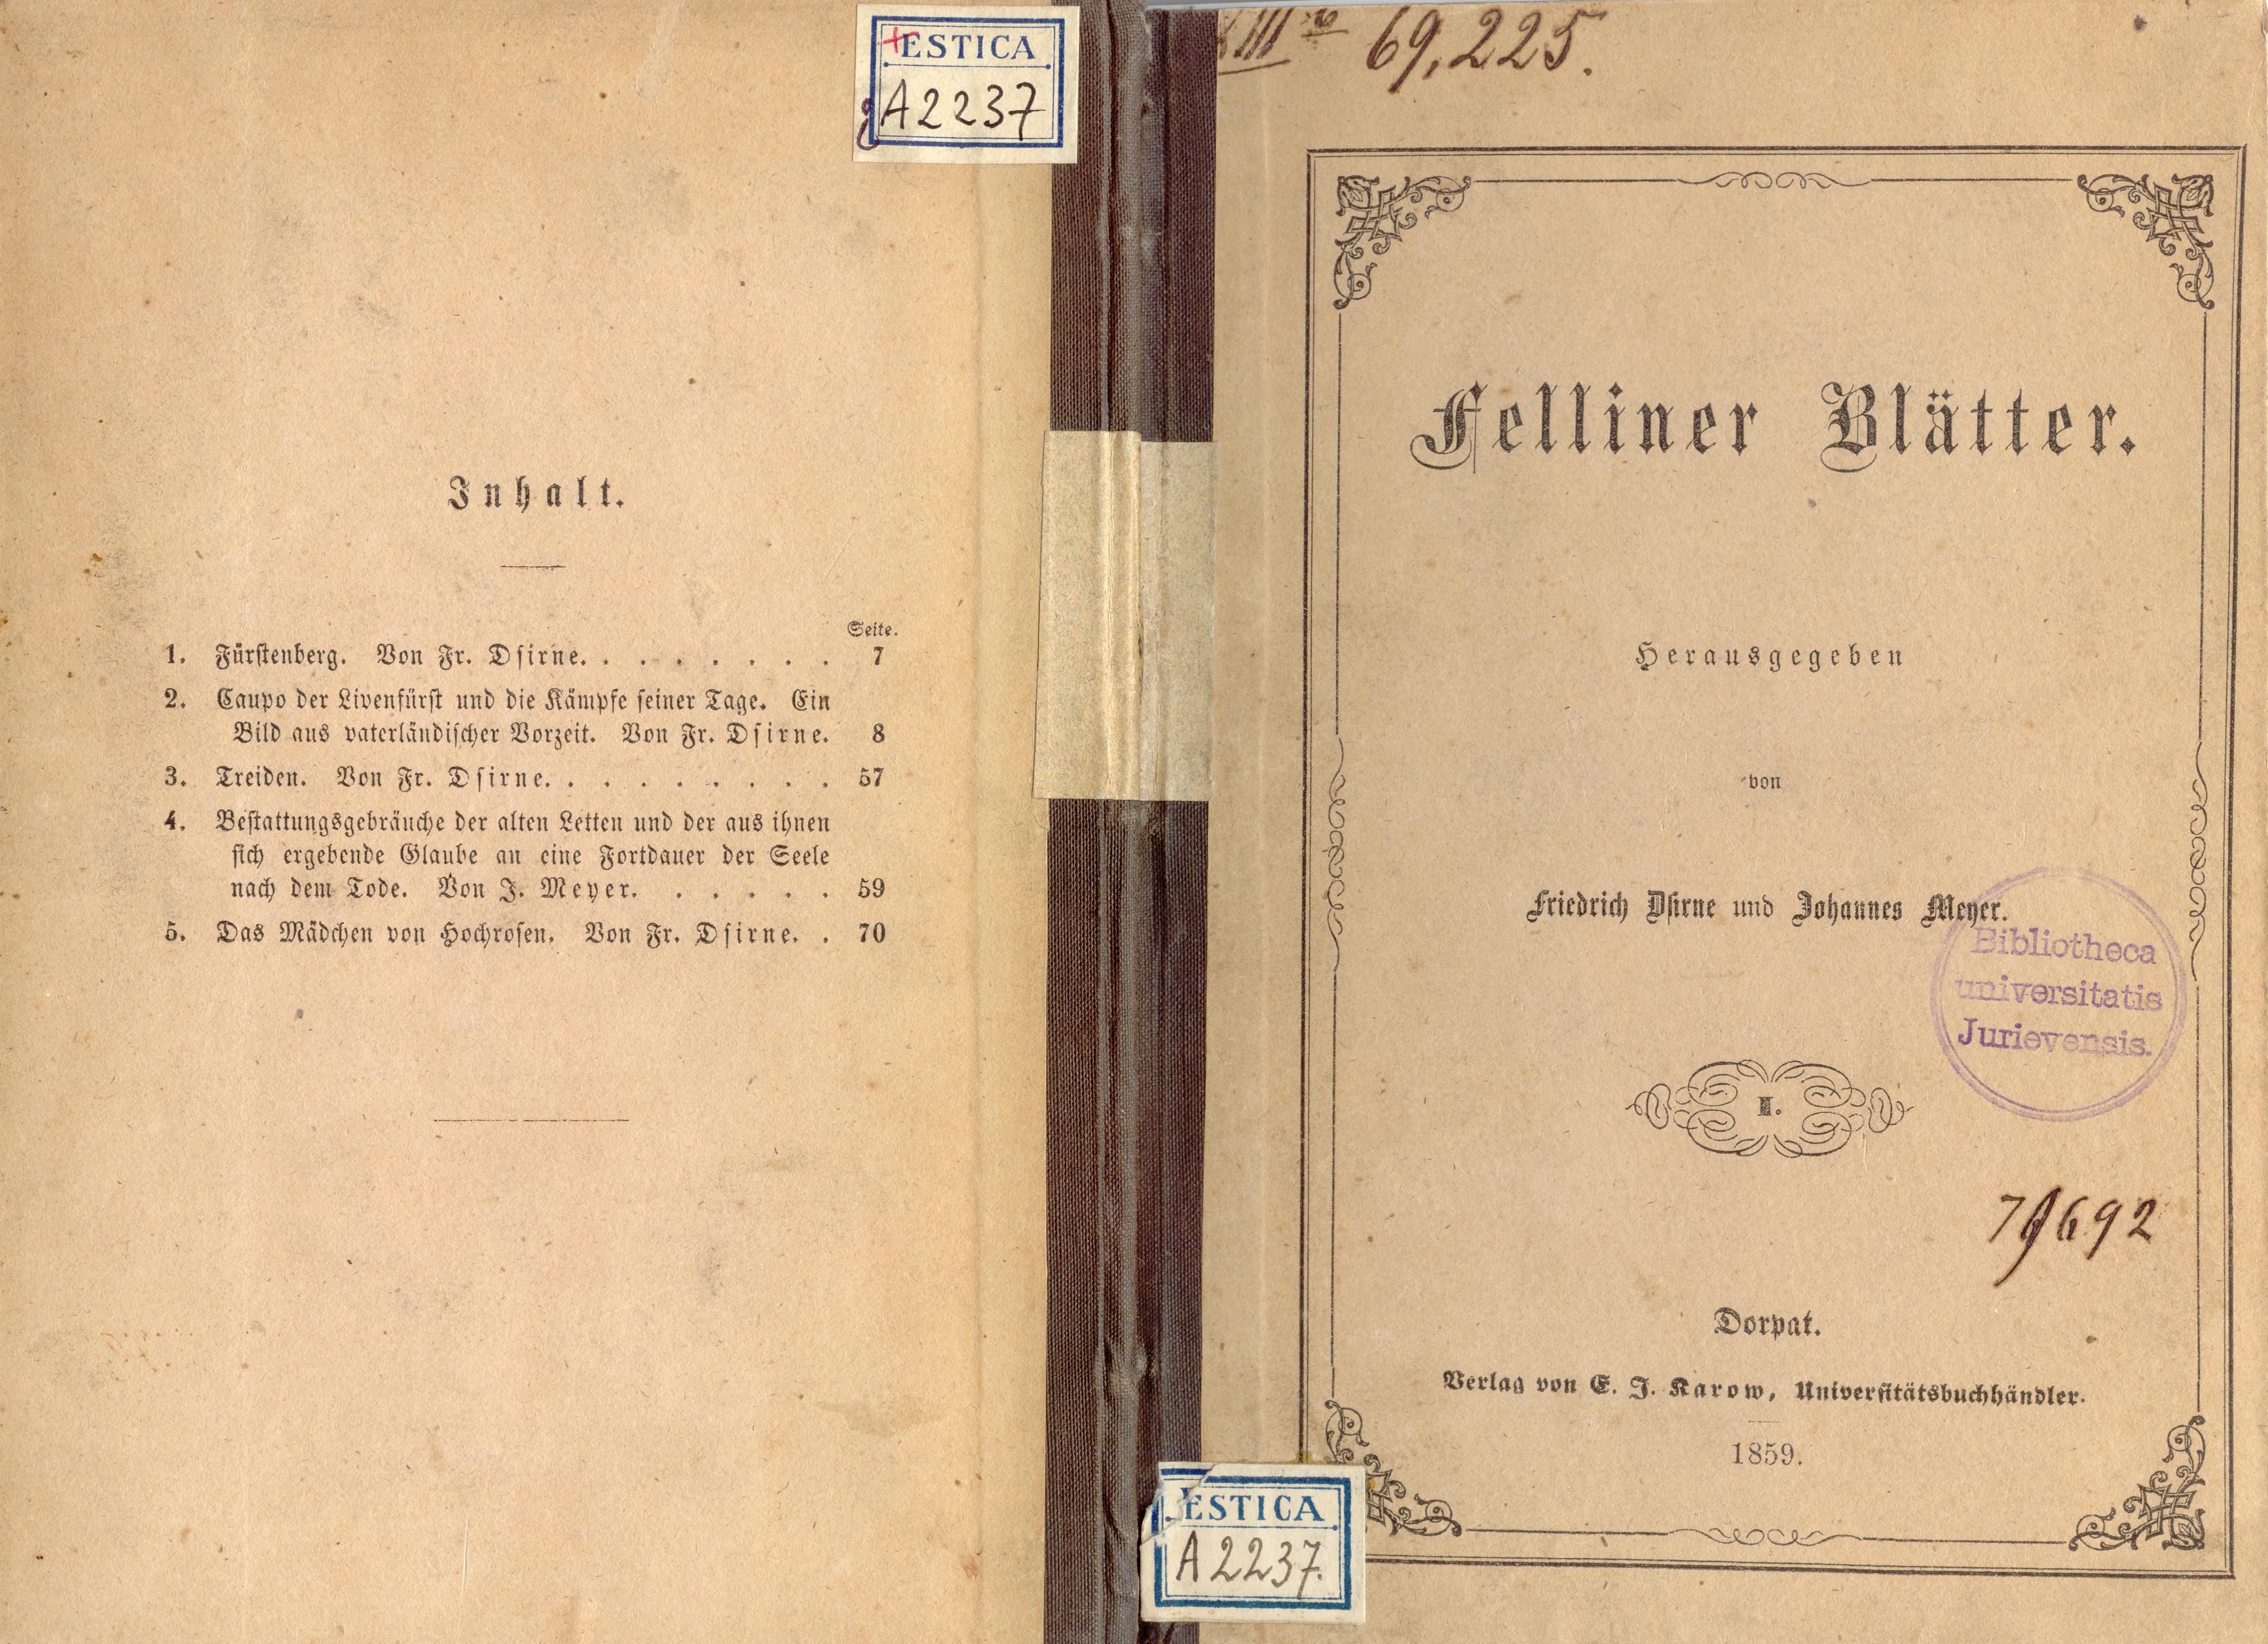 Felliner Blätter (1859) | 1. Обложки